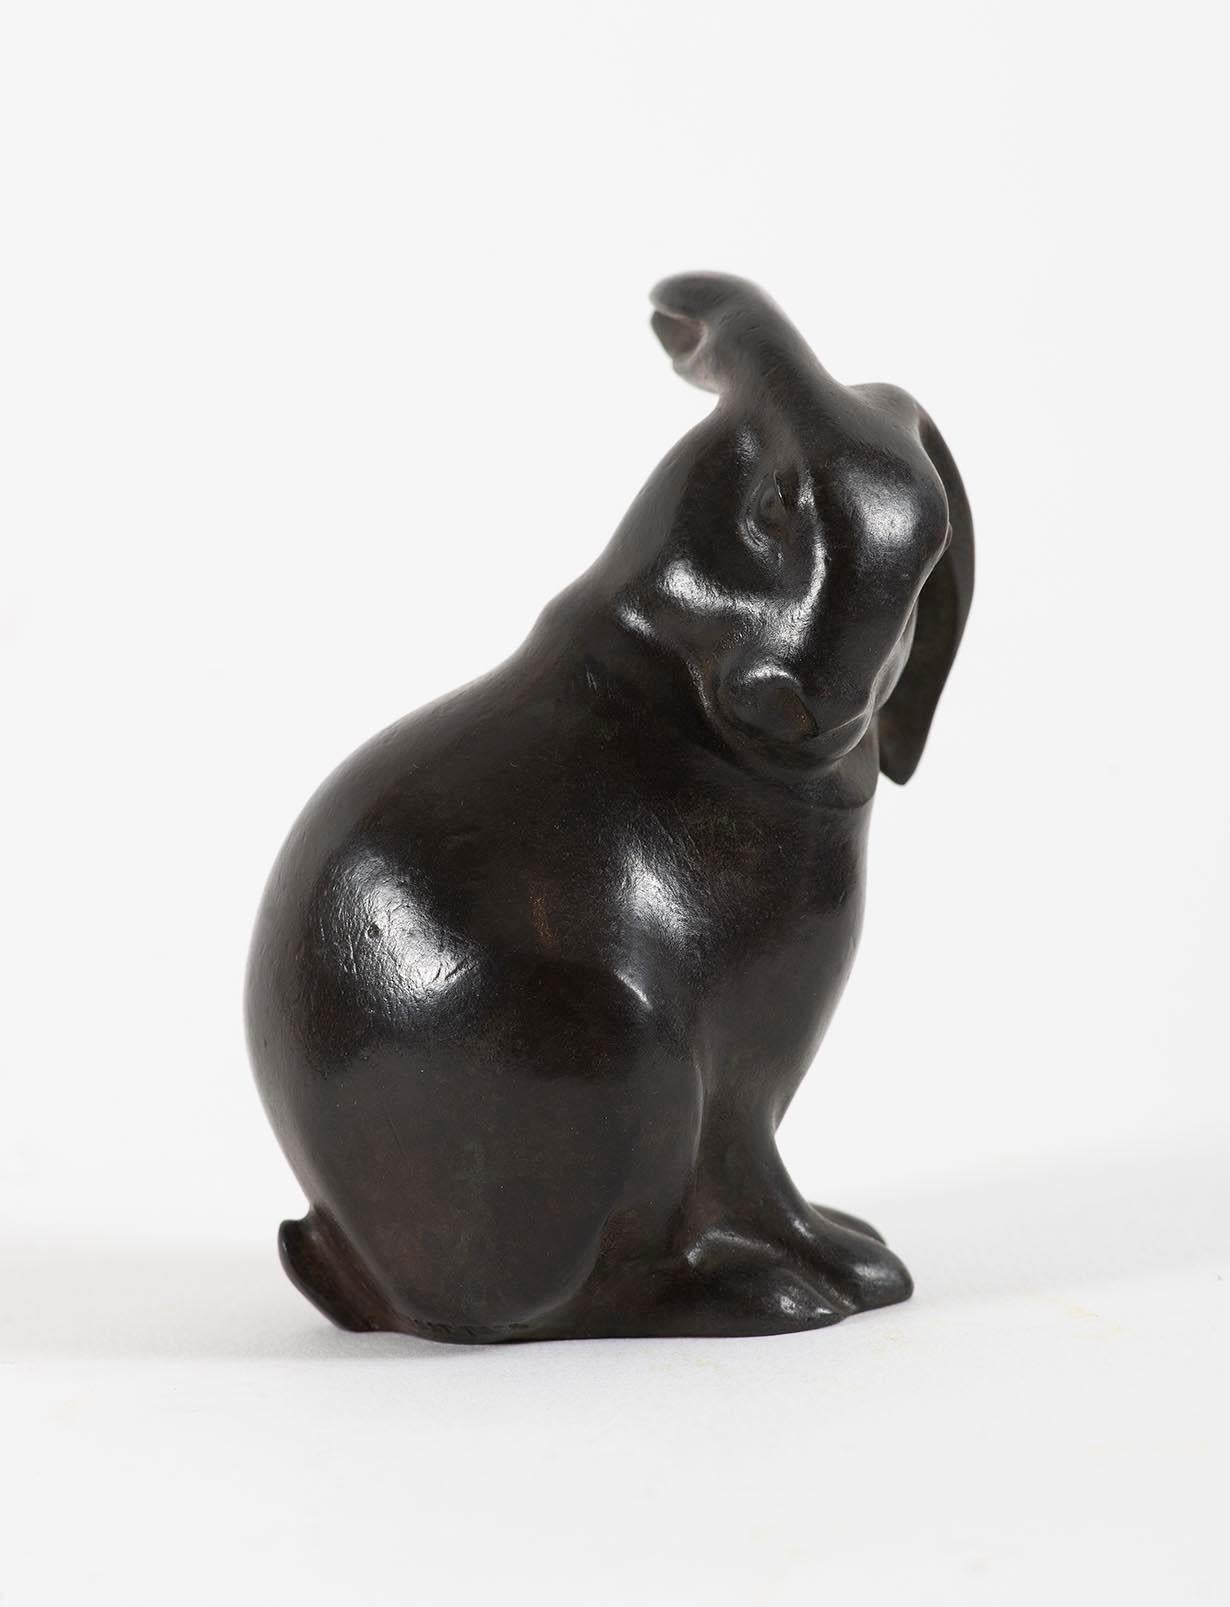 Lapin assis, tête tournée, Sandoz, 1910's, bronze, animal, rabbits, rare proof - Sculpture by Edouard-Marcel Sandoz